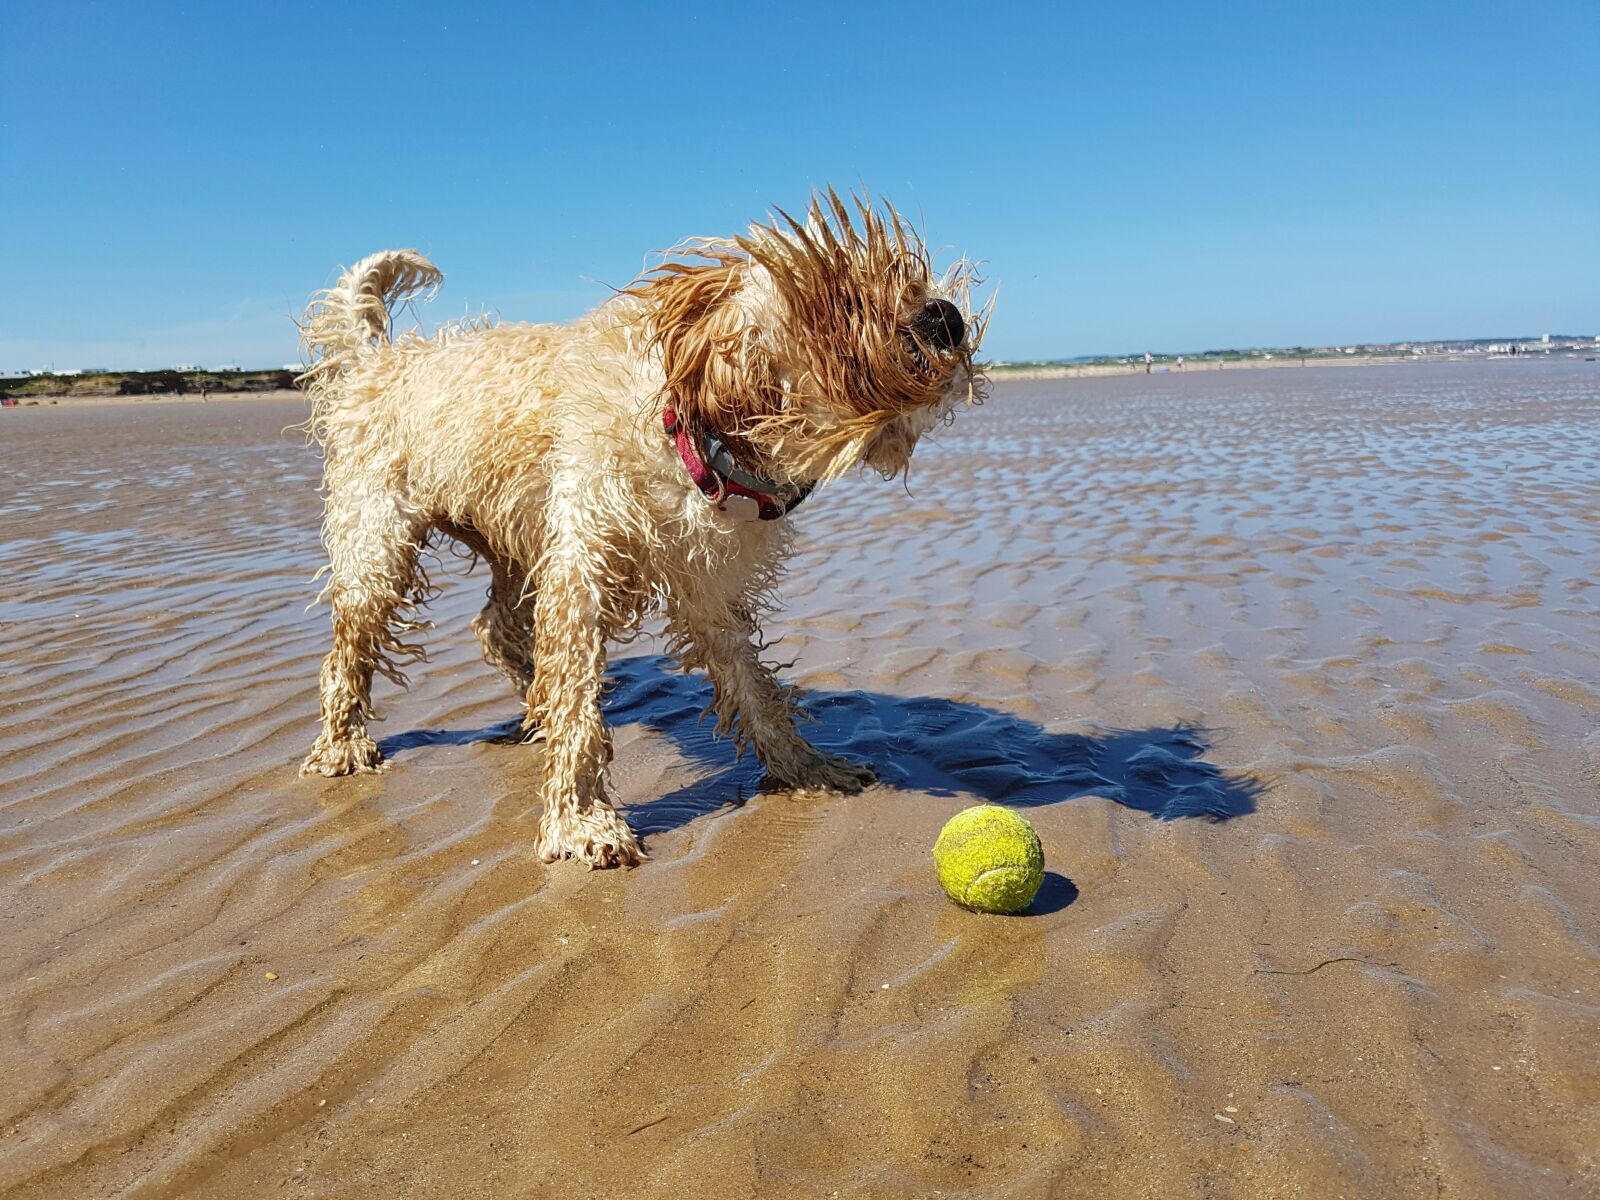 Samsung Galaxy S7 + Samsung Galaxy S7 Rear Camera sample photo. Beach, dog, ball photography